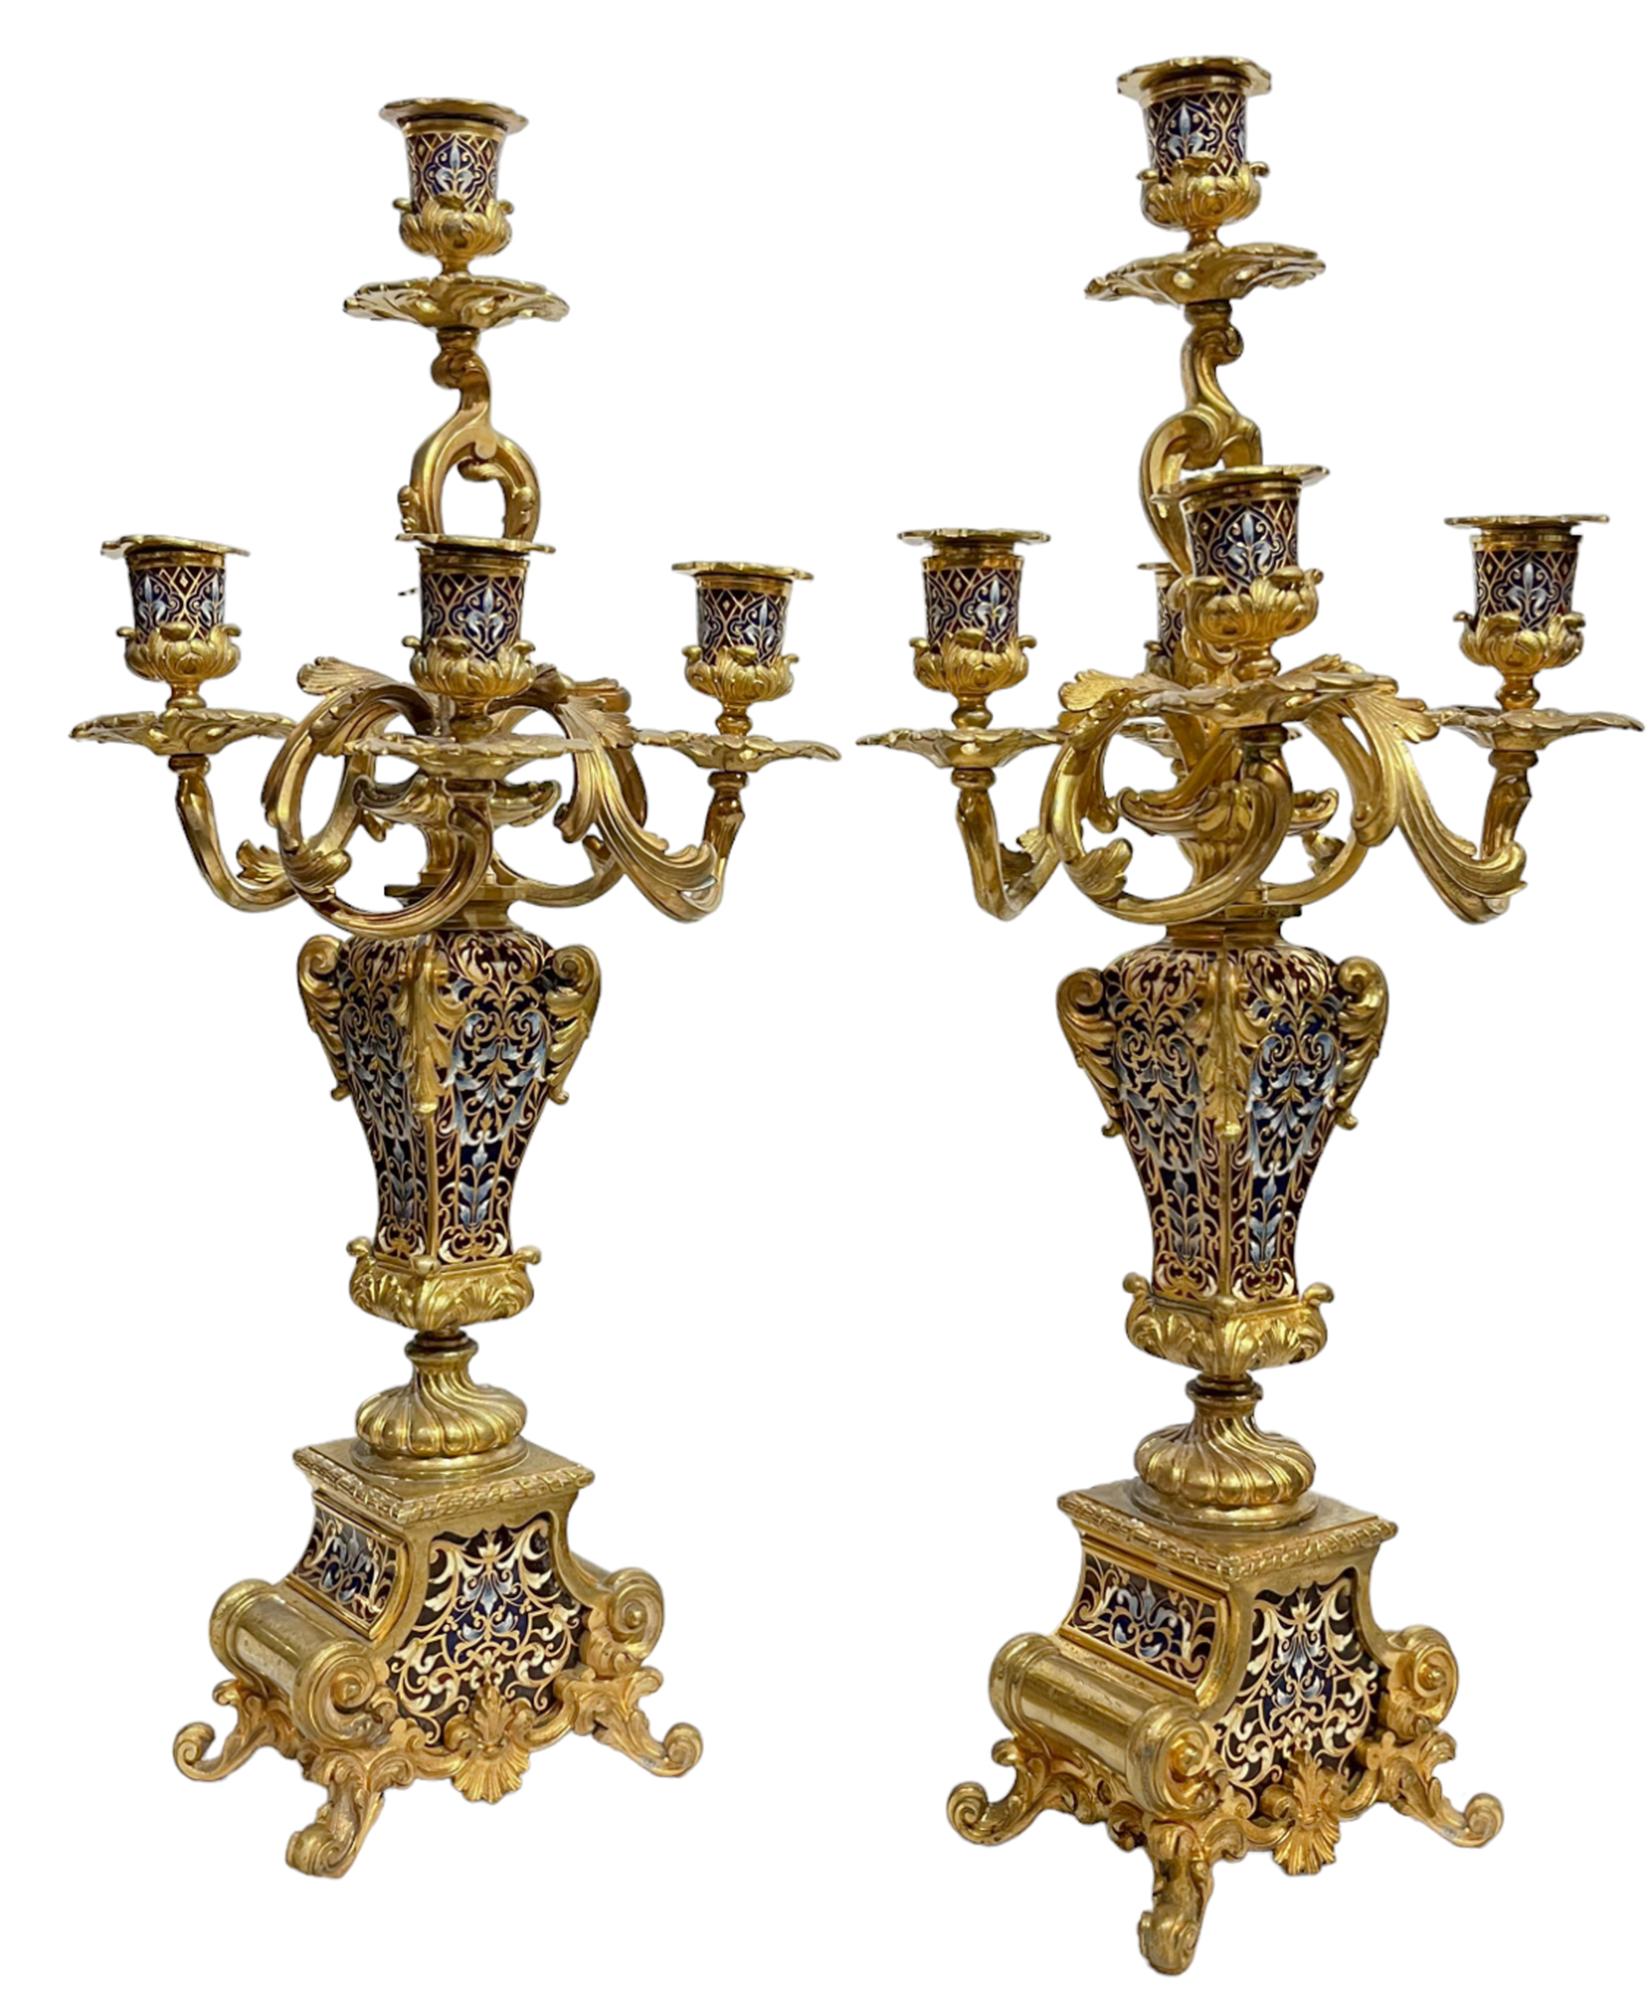 Paar fünfflammige Kandelaber aus Champlevé und vergoldeter Bronze

polychrom emailliert, mit verschnörkelten, blattförmigen Armen und Kerzentüllen auf viereckigen, vasenförmigen Stützen auf einem verschnörkelten Sockel,
